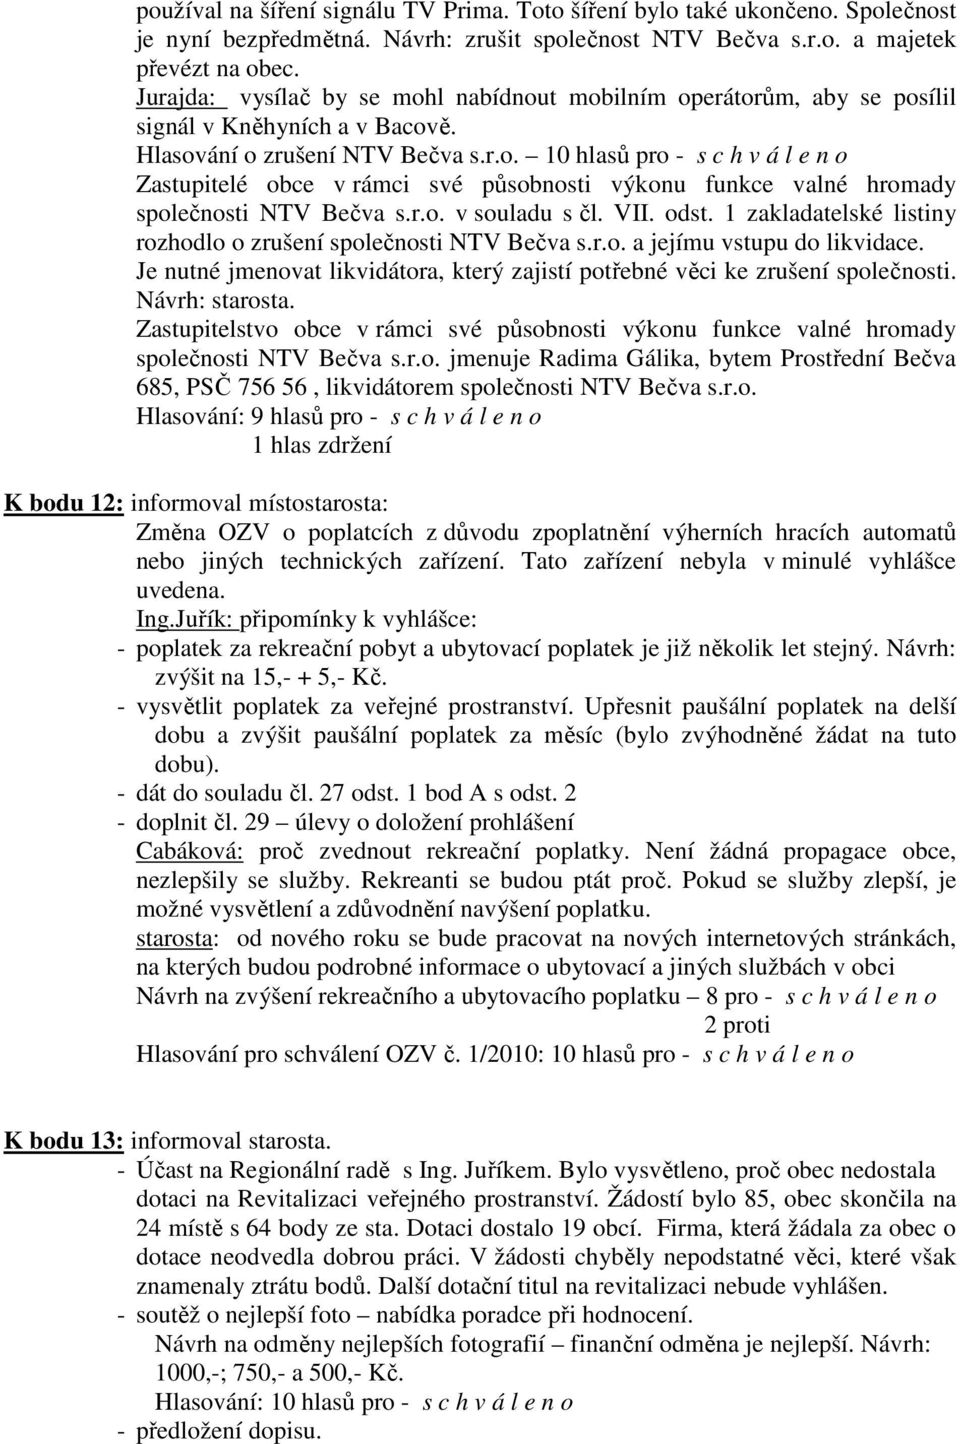 r.o. v souladu s čl. VII. odst. 1 zakladatelské listiny rozhodlo o zrušení společnosti NTV Bečva s.r.o. a jejímu vstupu do likvidace.